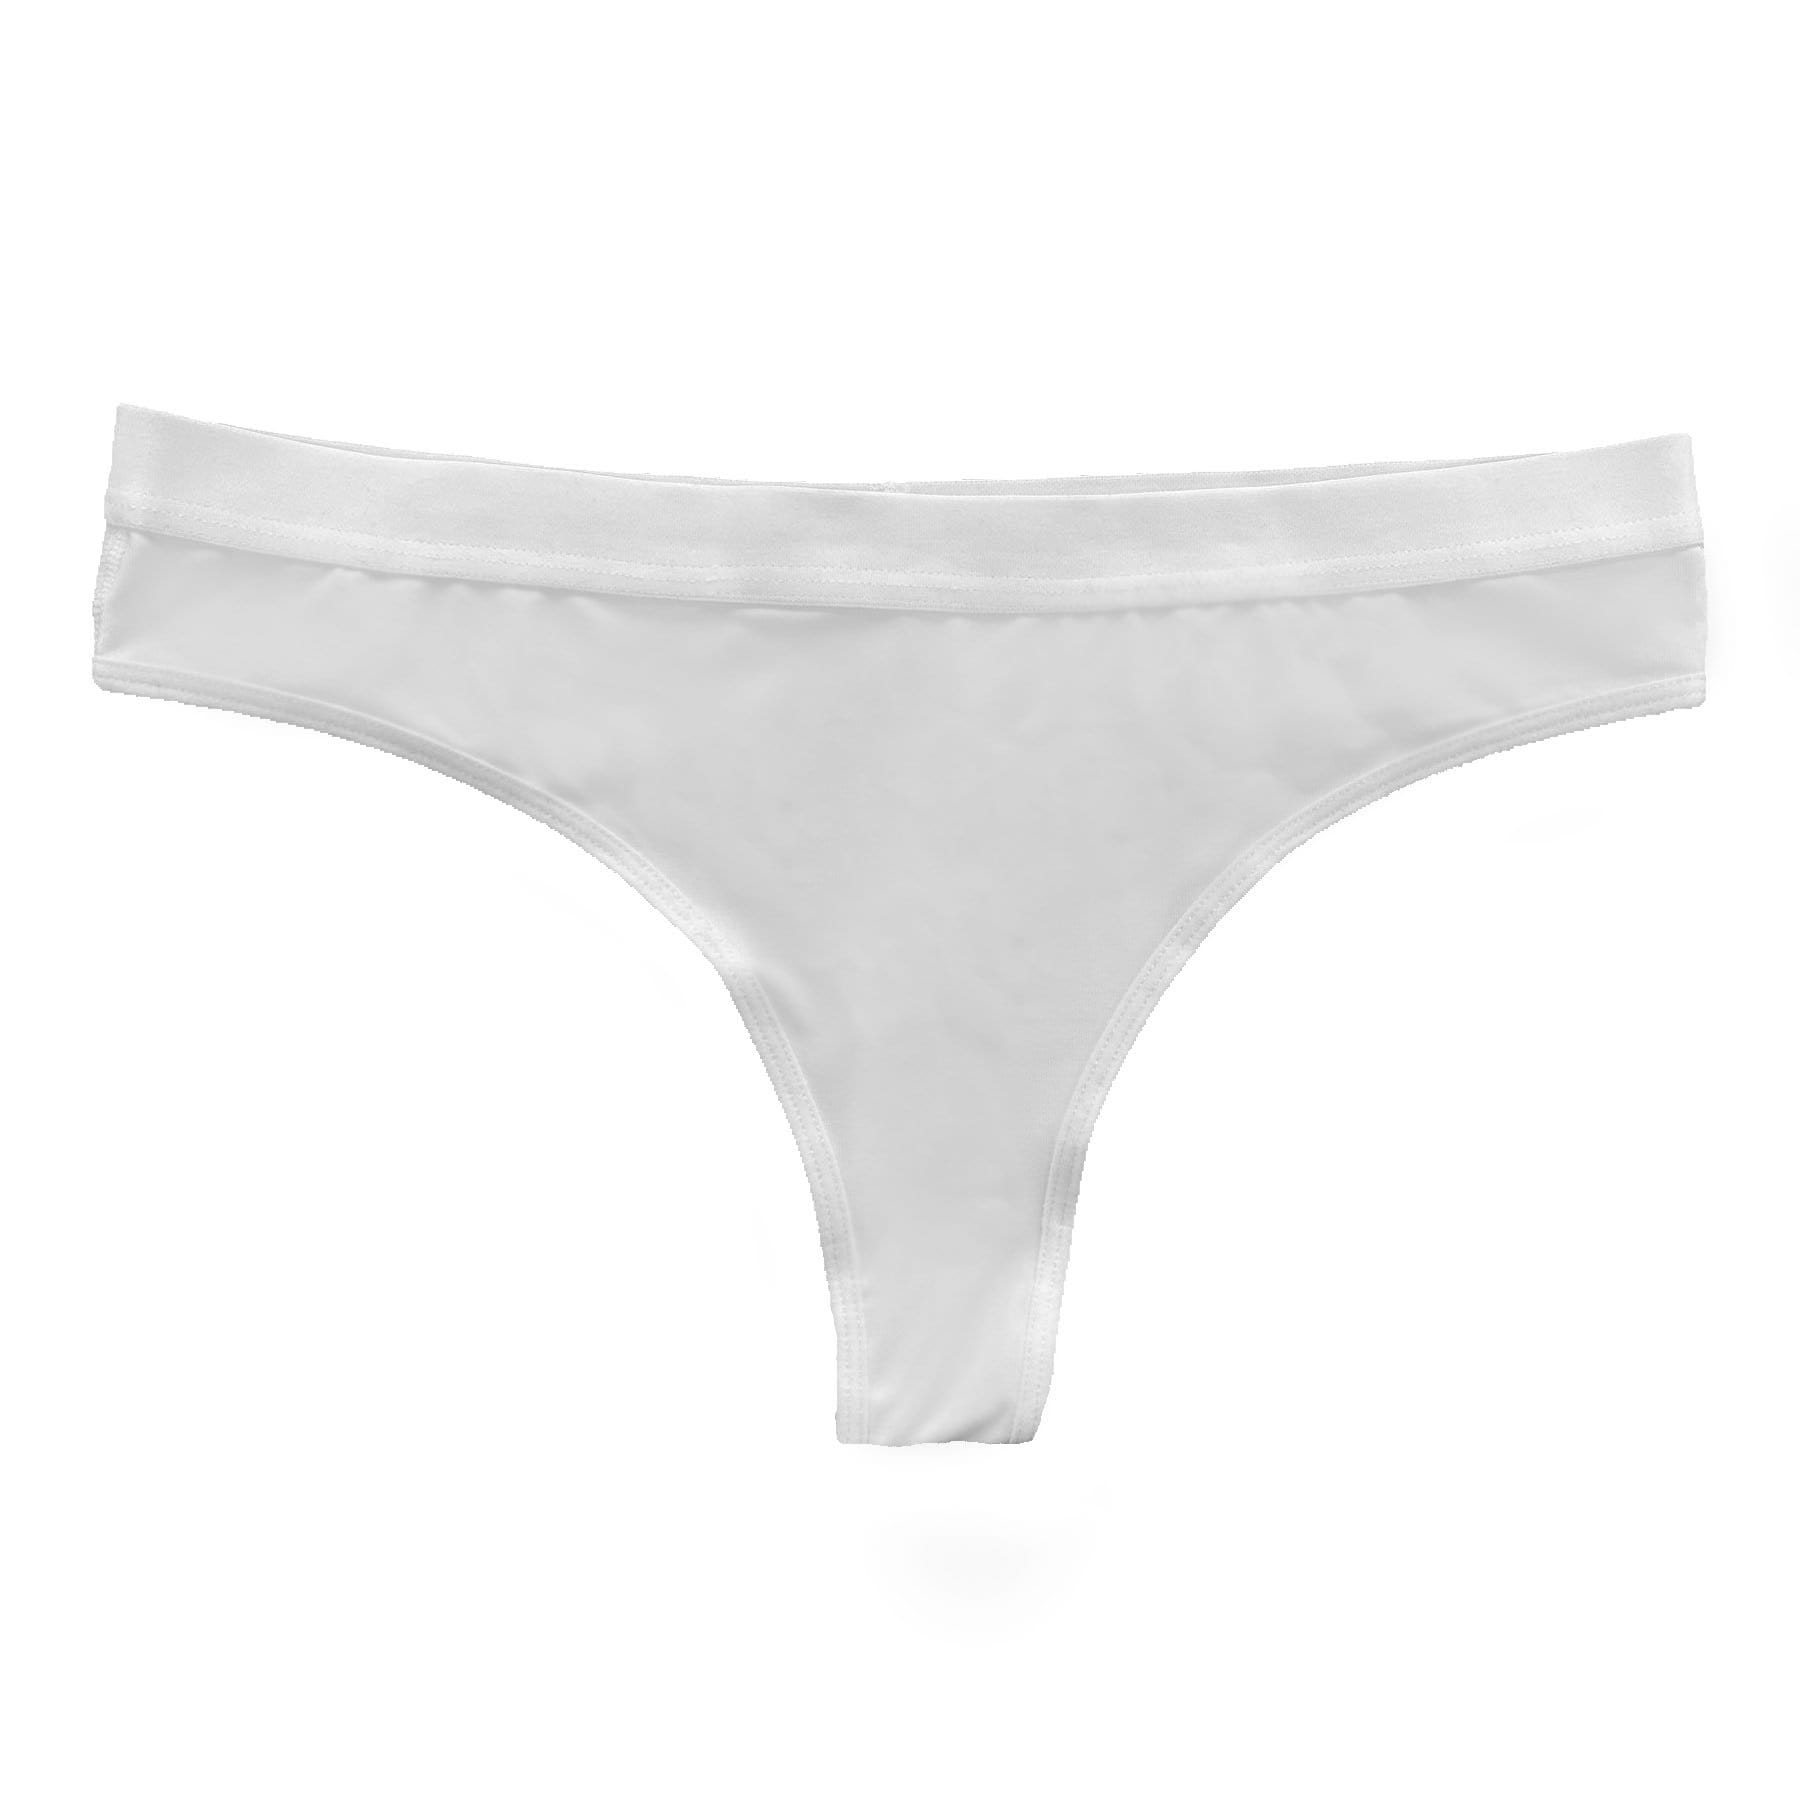 Grey, Women's Thong Panties